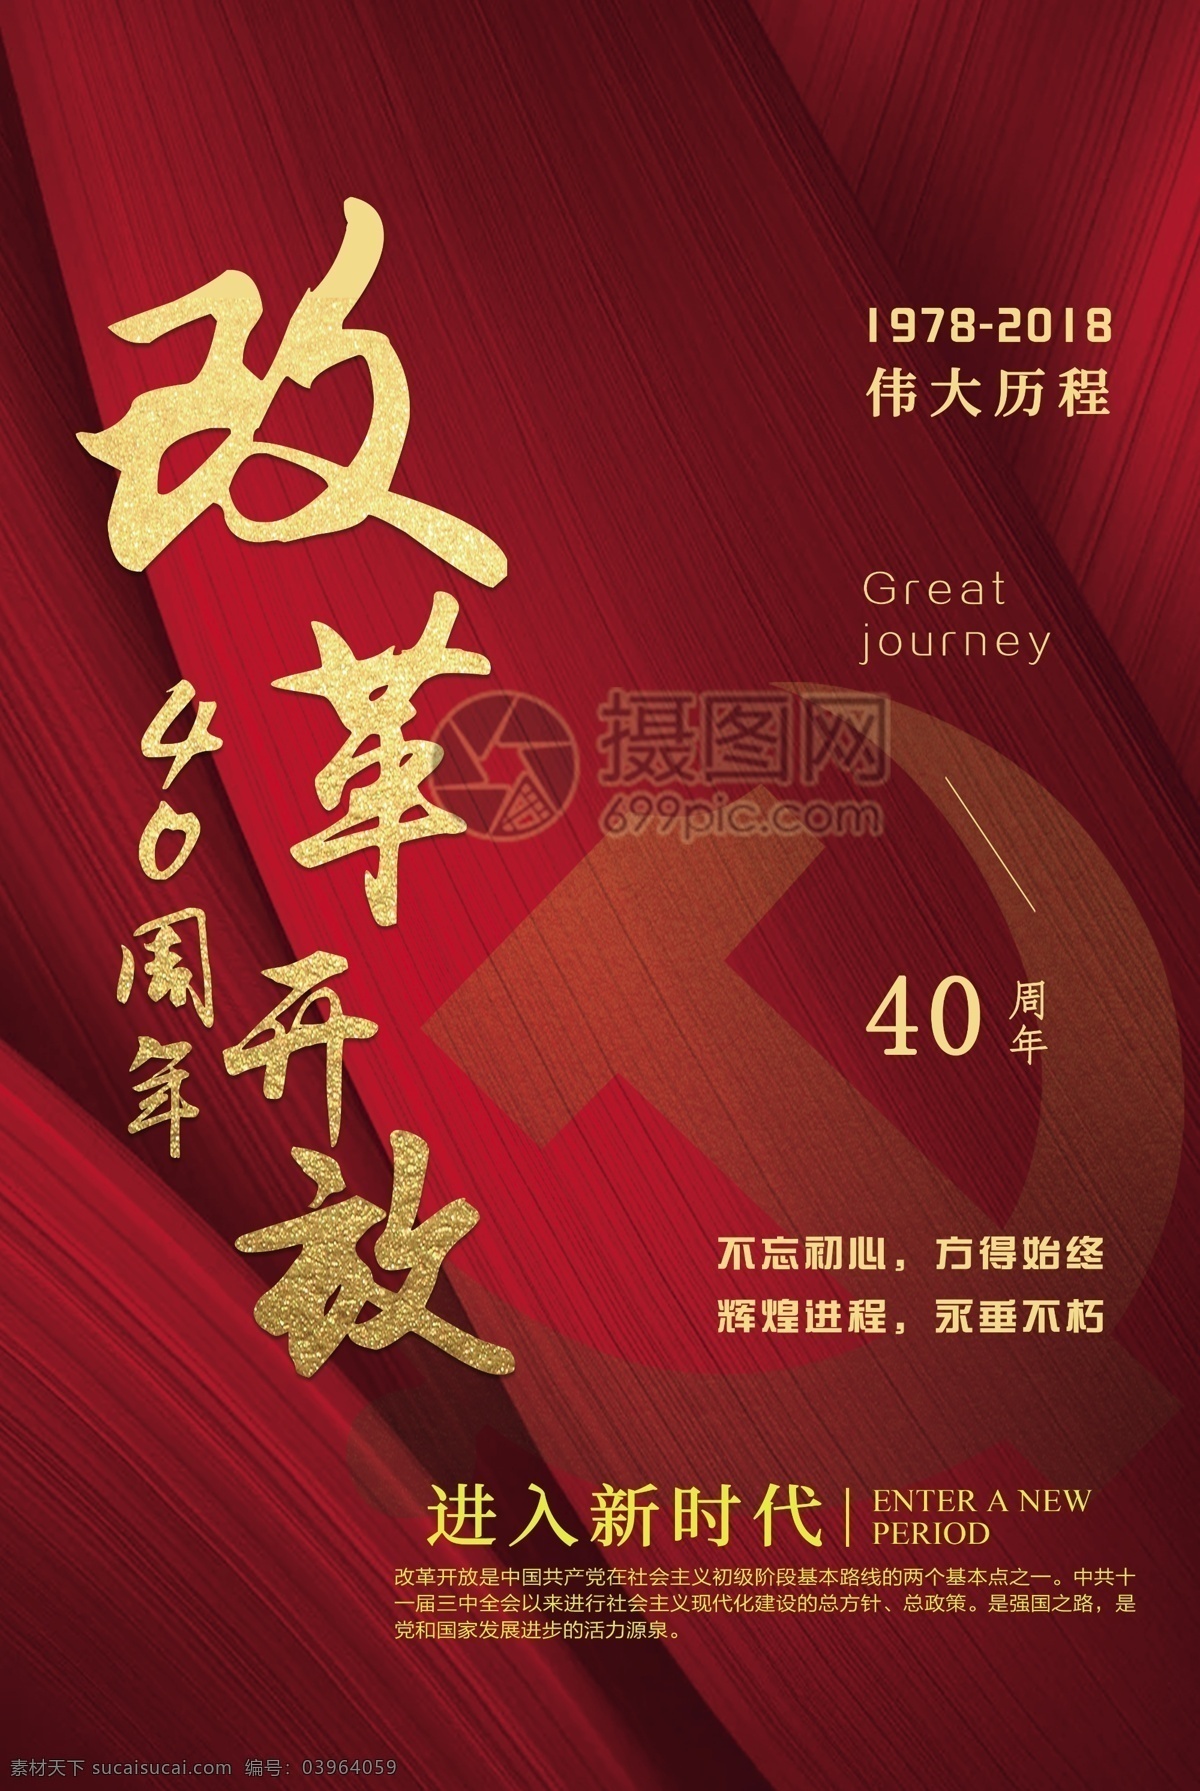 党建 改革开放 周年 海报 40周年 红色 纪念 革命 发展 新中国